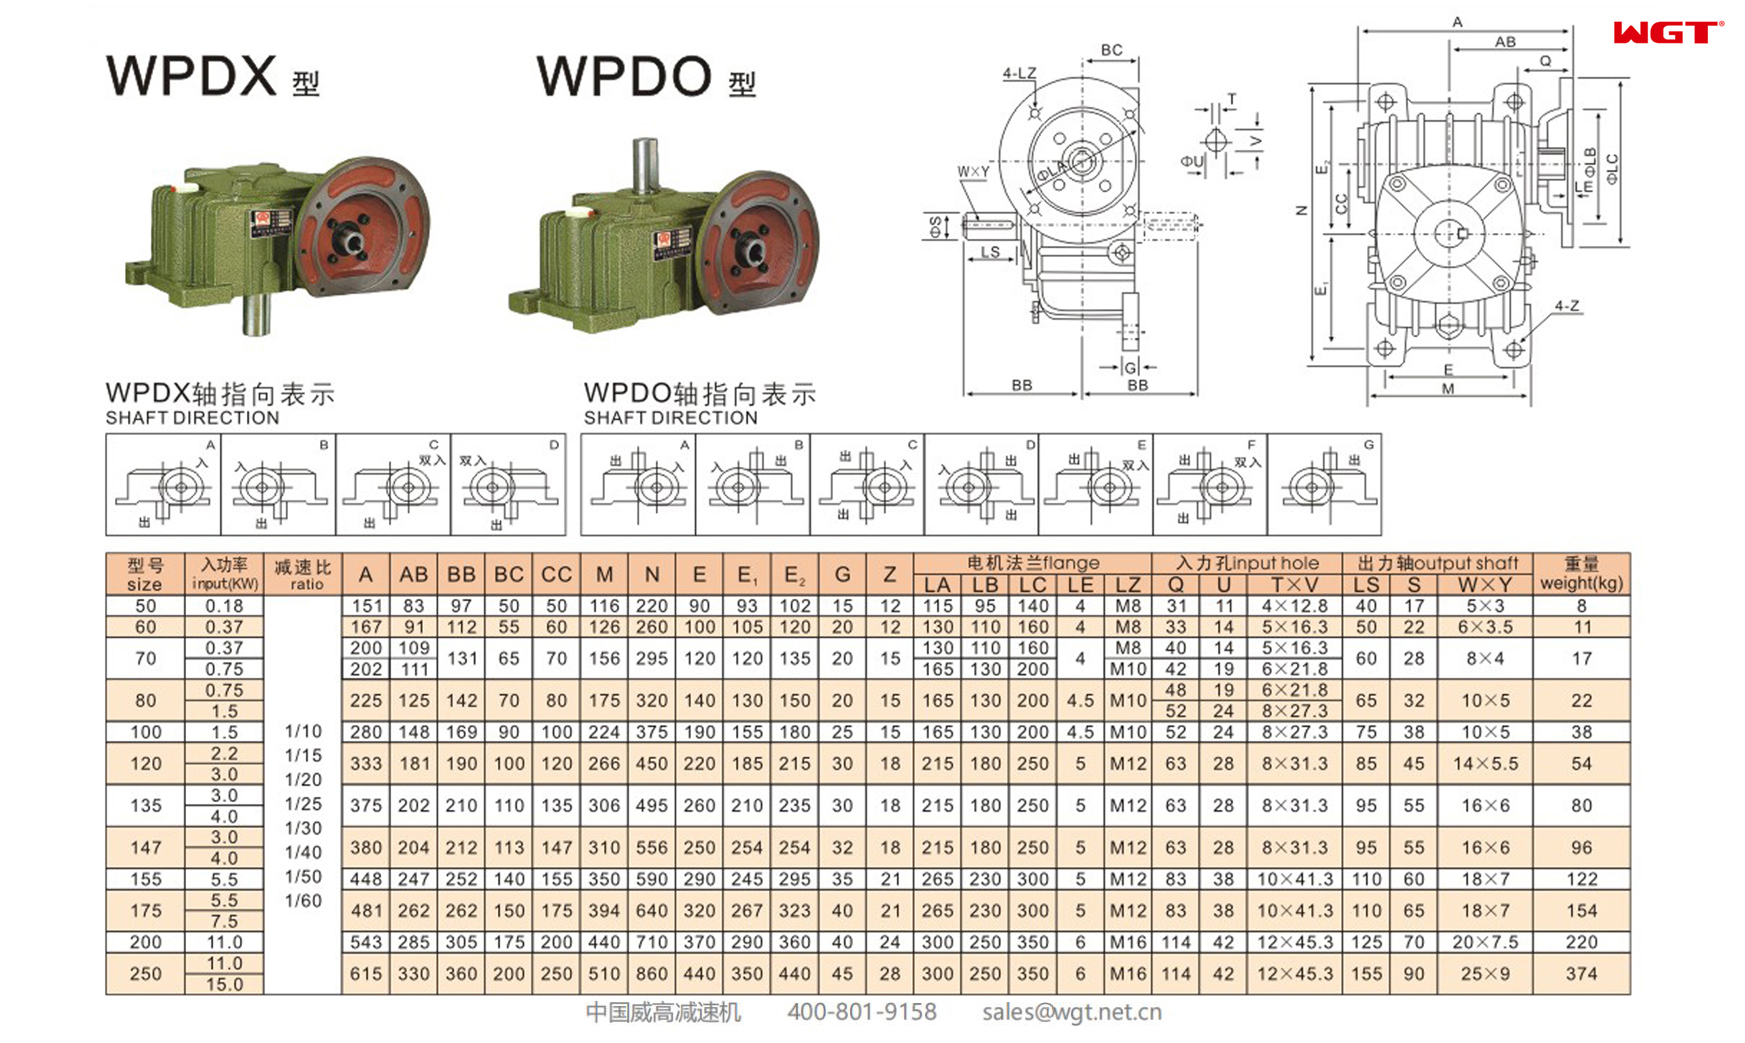 WPDO250 Червячный редуктор Односкоростной редуктор